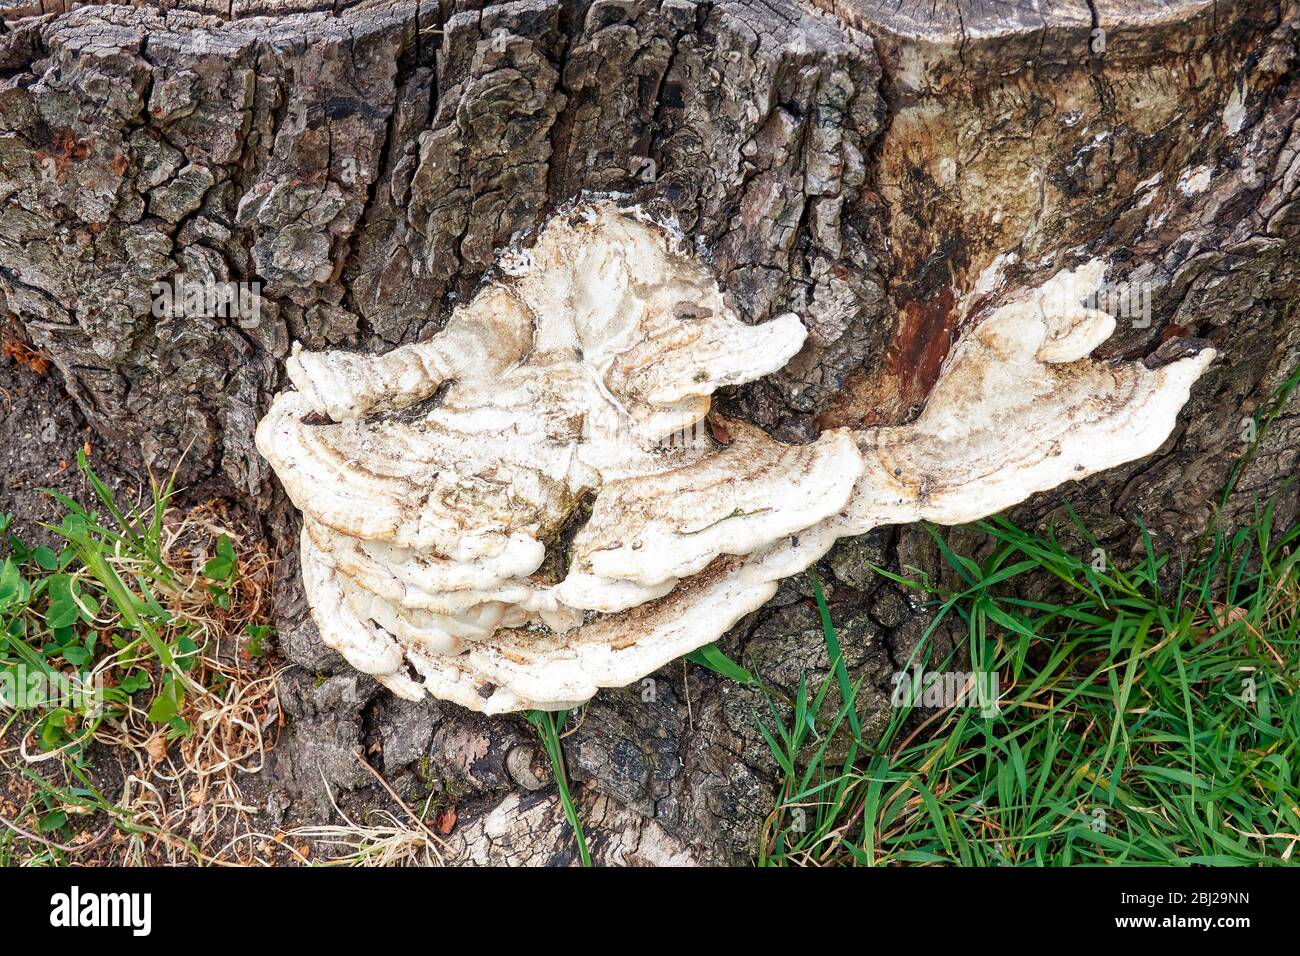 Bracket fungus on felled tree stump Stock Photo